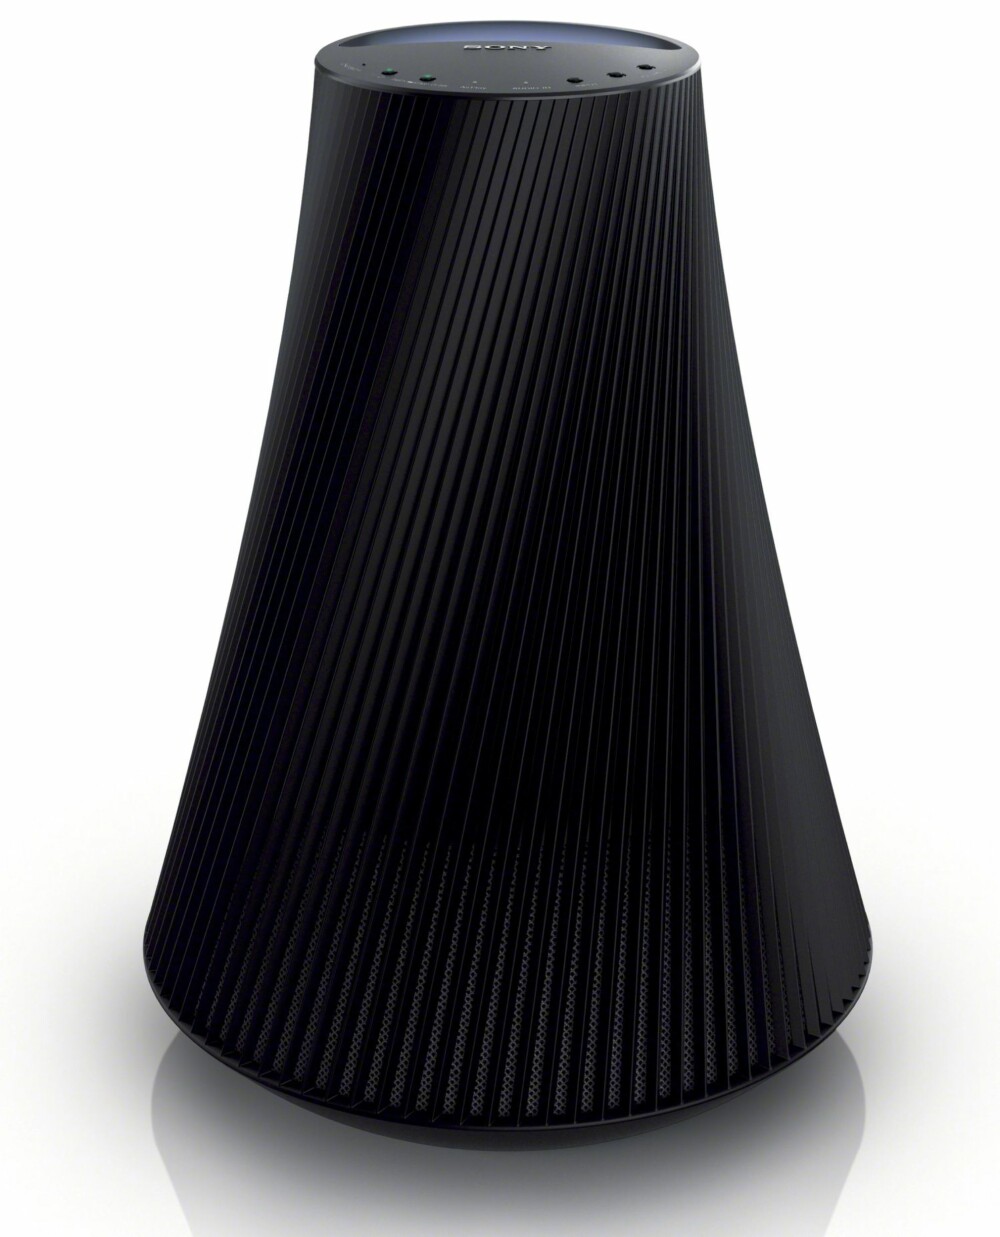 BLOMSTEROPOTTE: Sony SA-NS 510 kan nesten forveksles med en vase, men ikke la deg lure. Her får du god lyd.